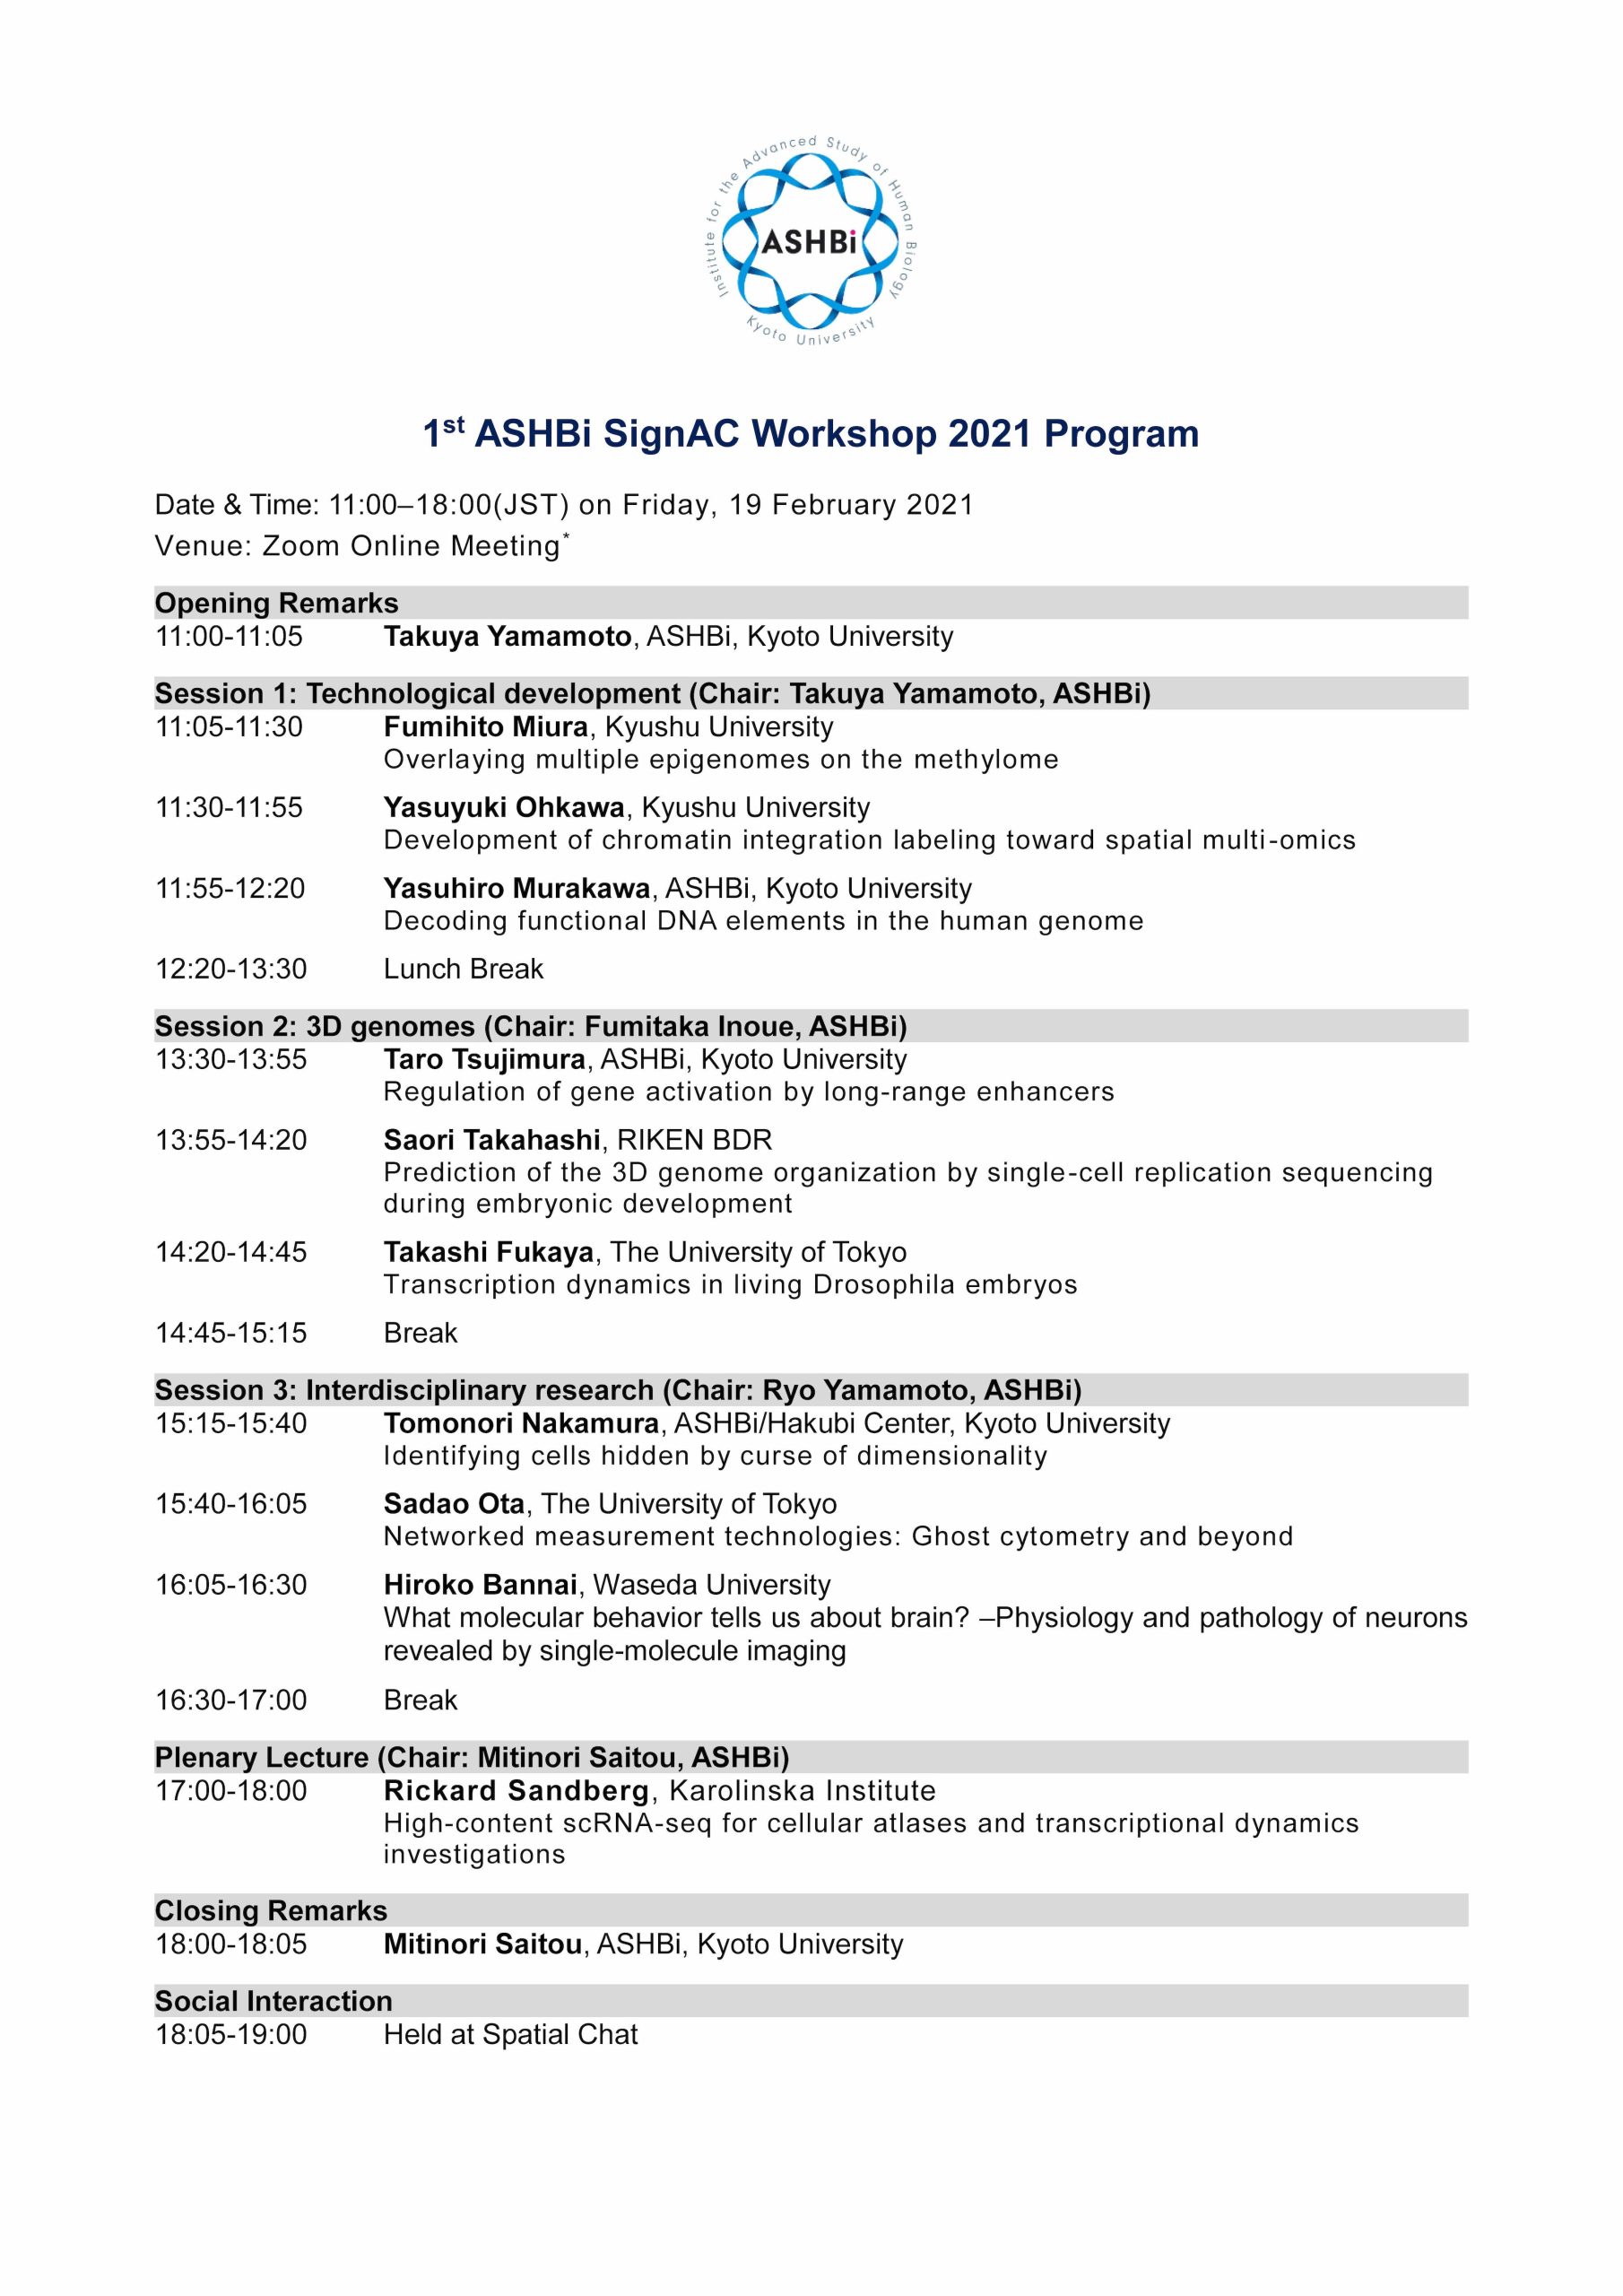 Program of 1st ASHBi SignAC Workshop